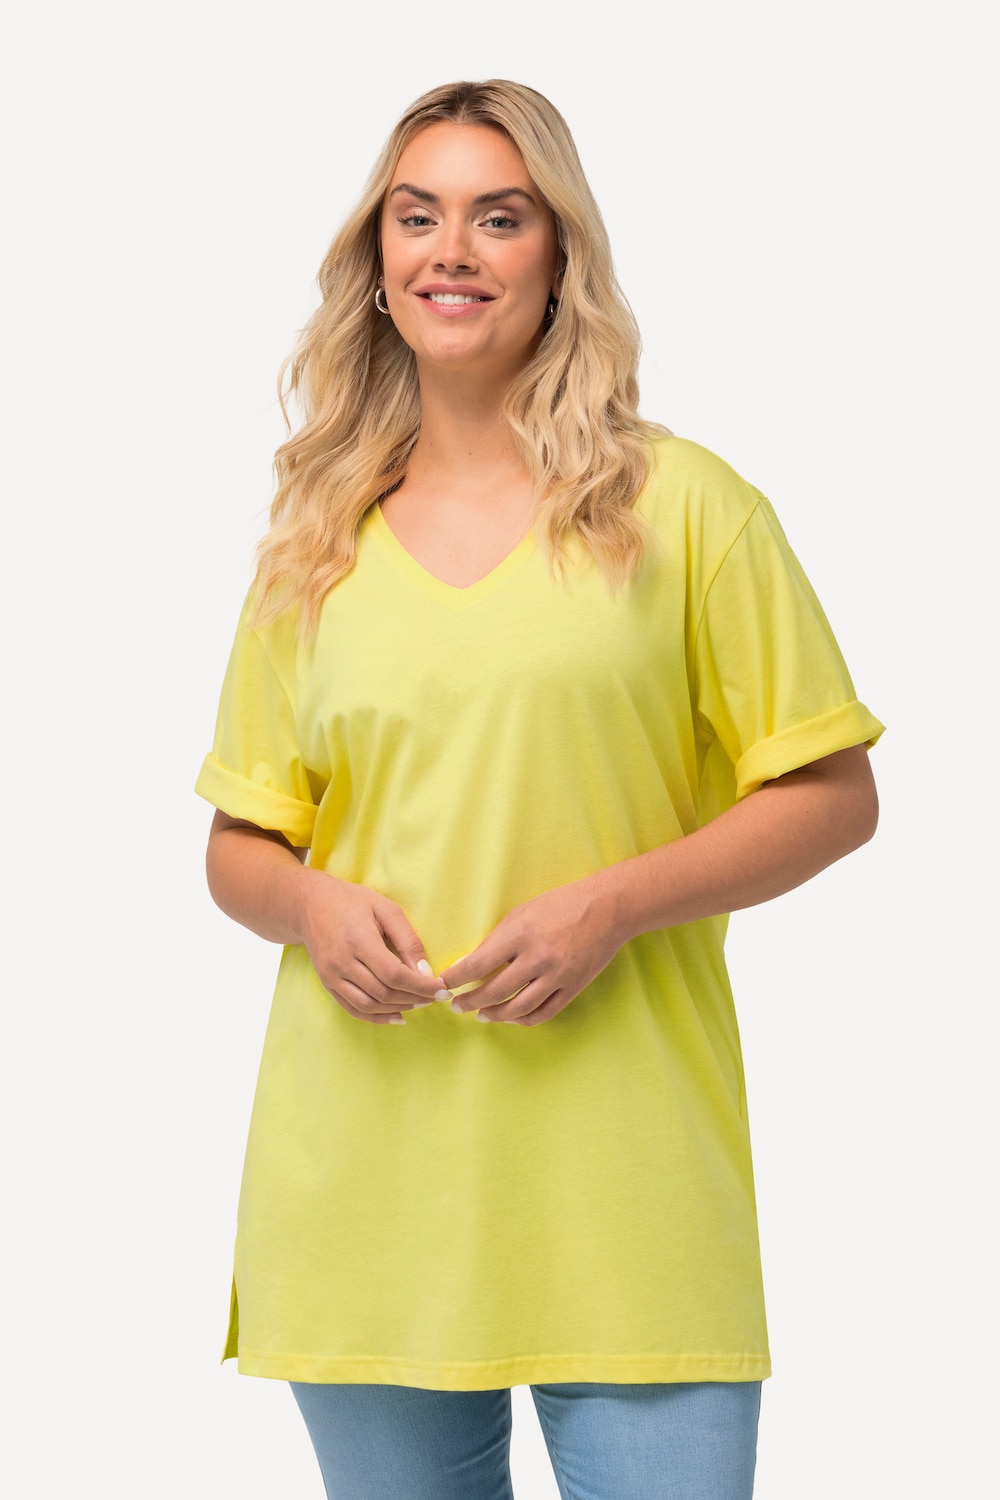 Grote Maten T-Shirt, Dames, geel, Maat: 62/64, Katoen/Viscose, Ulla Popken